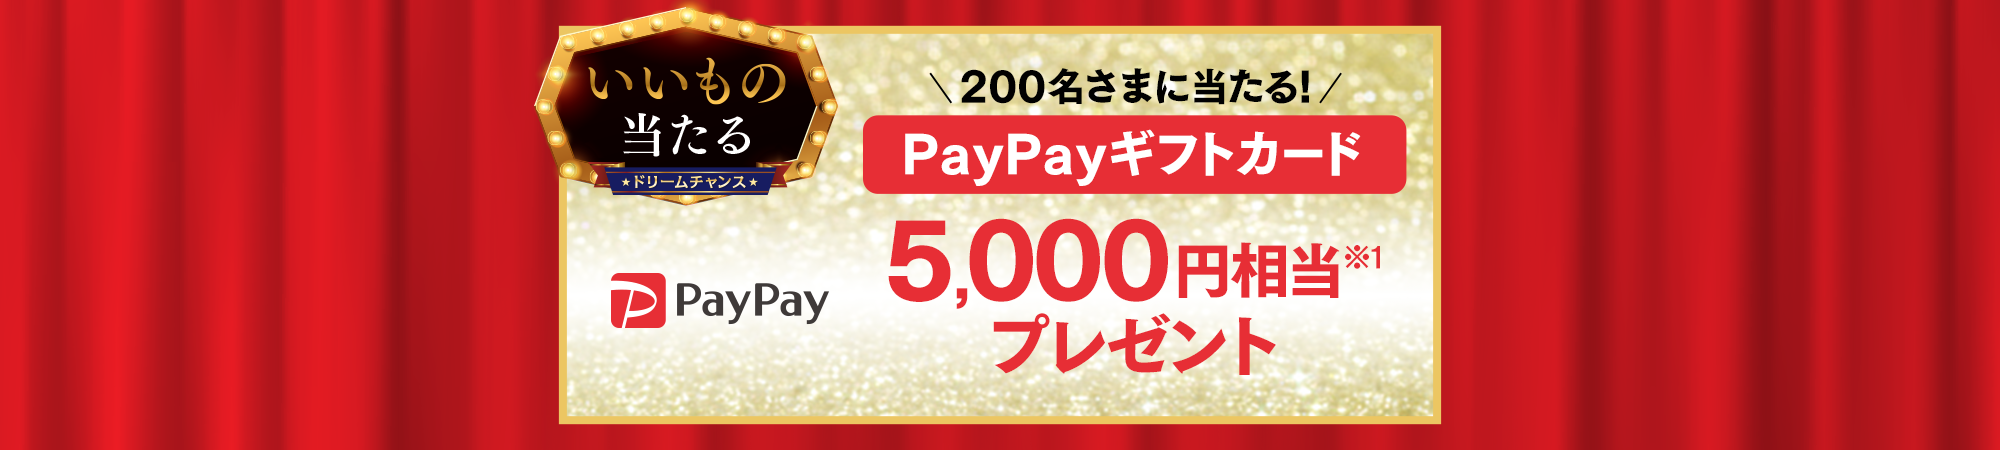 ソフトバンクLINEのドリームチャンスで抽選で1000名に「PayPayギフトカード 1000円相当」が当たる。～8/1 10時。